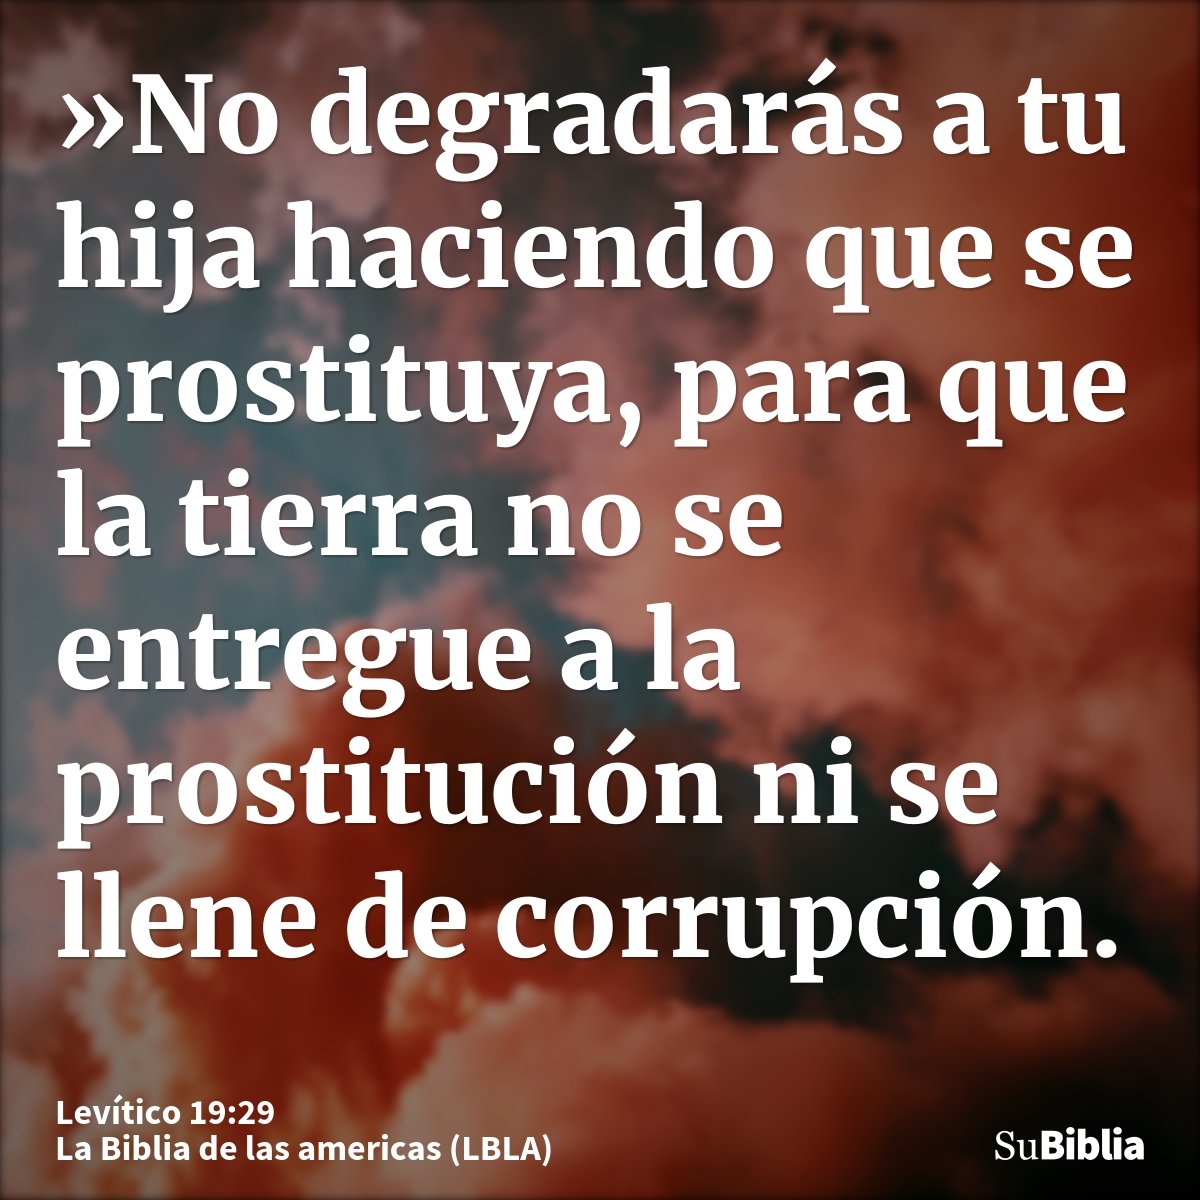 »No degradarás a tu hija haciendo que se prostituya, para que la tierra no se entregue a la prostitución ni se llene de corrupción.